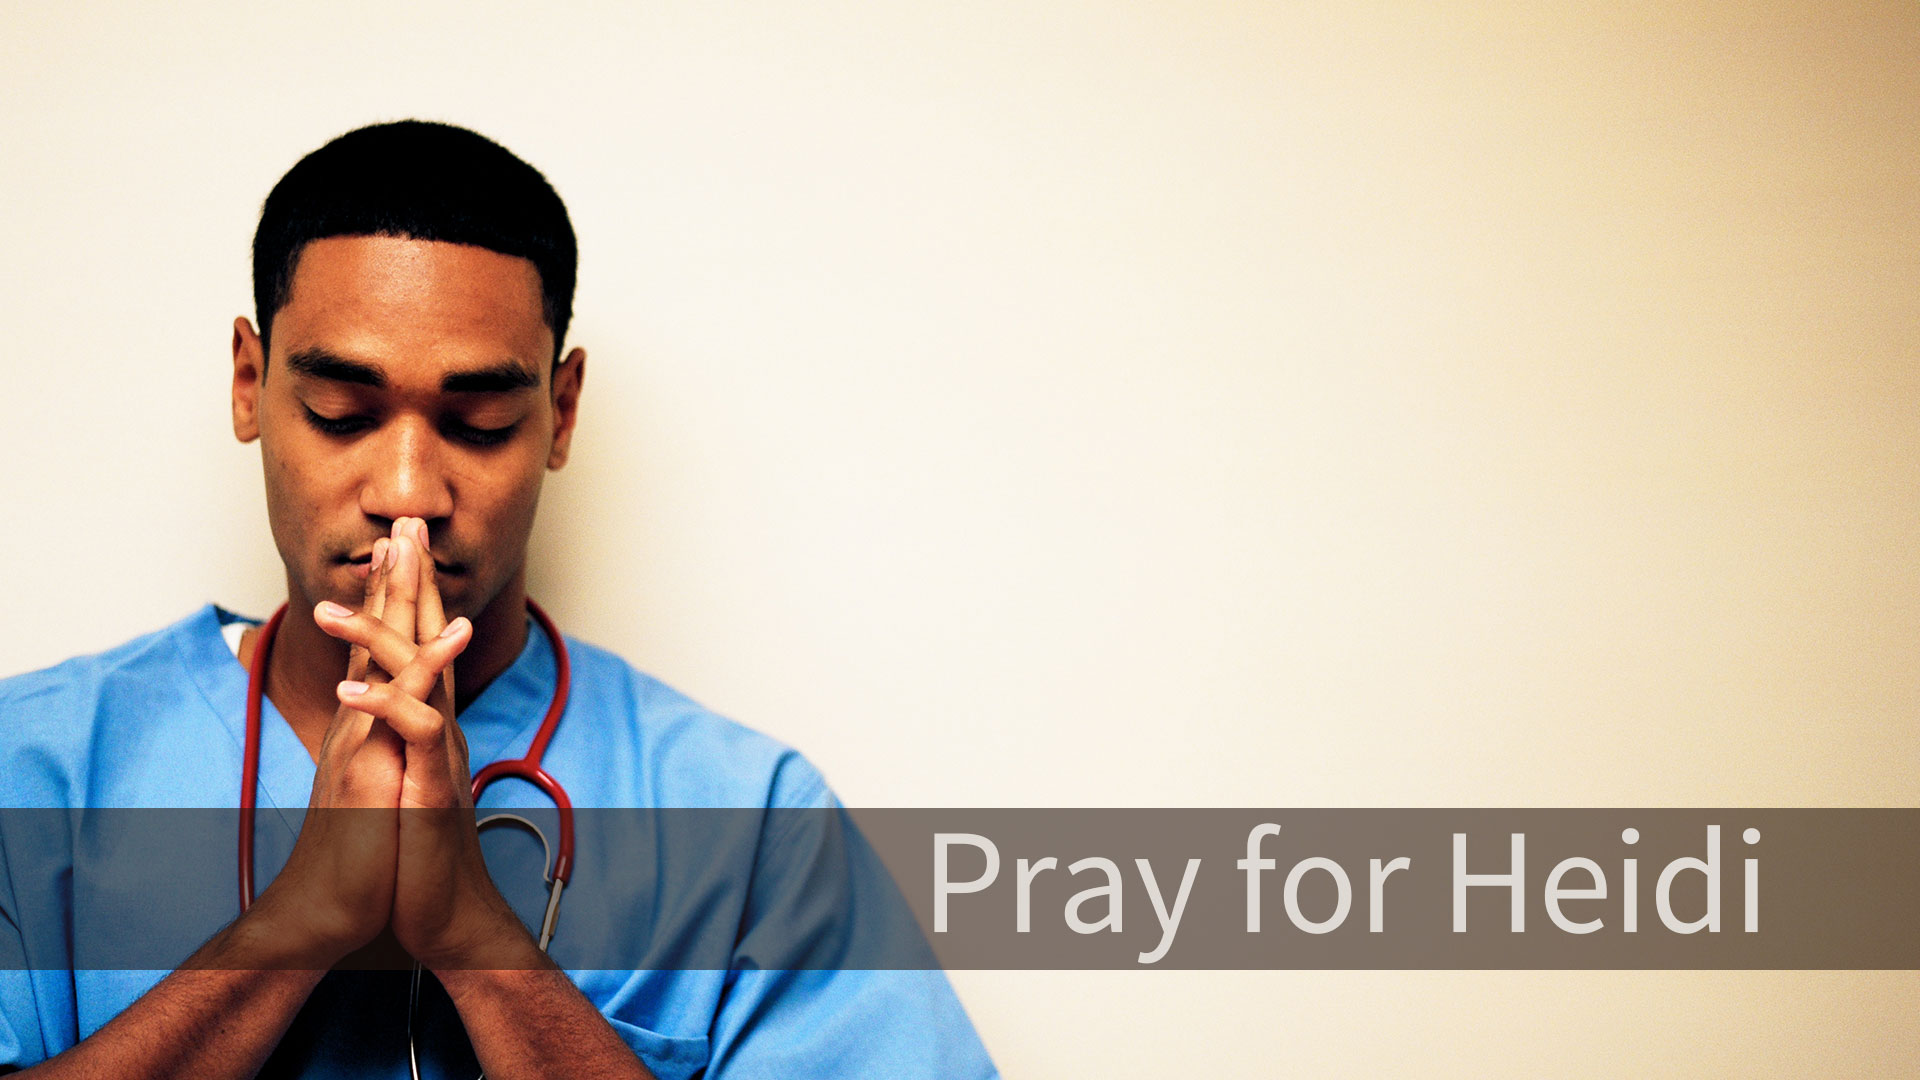 Prayer for Heidi